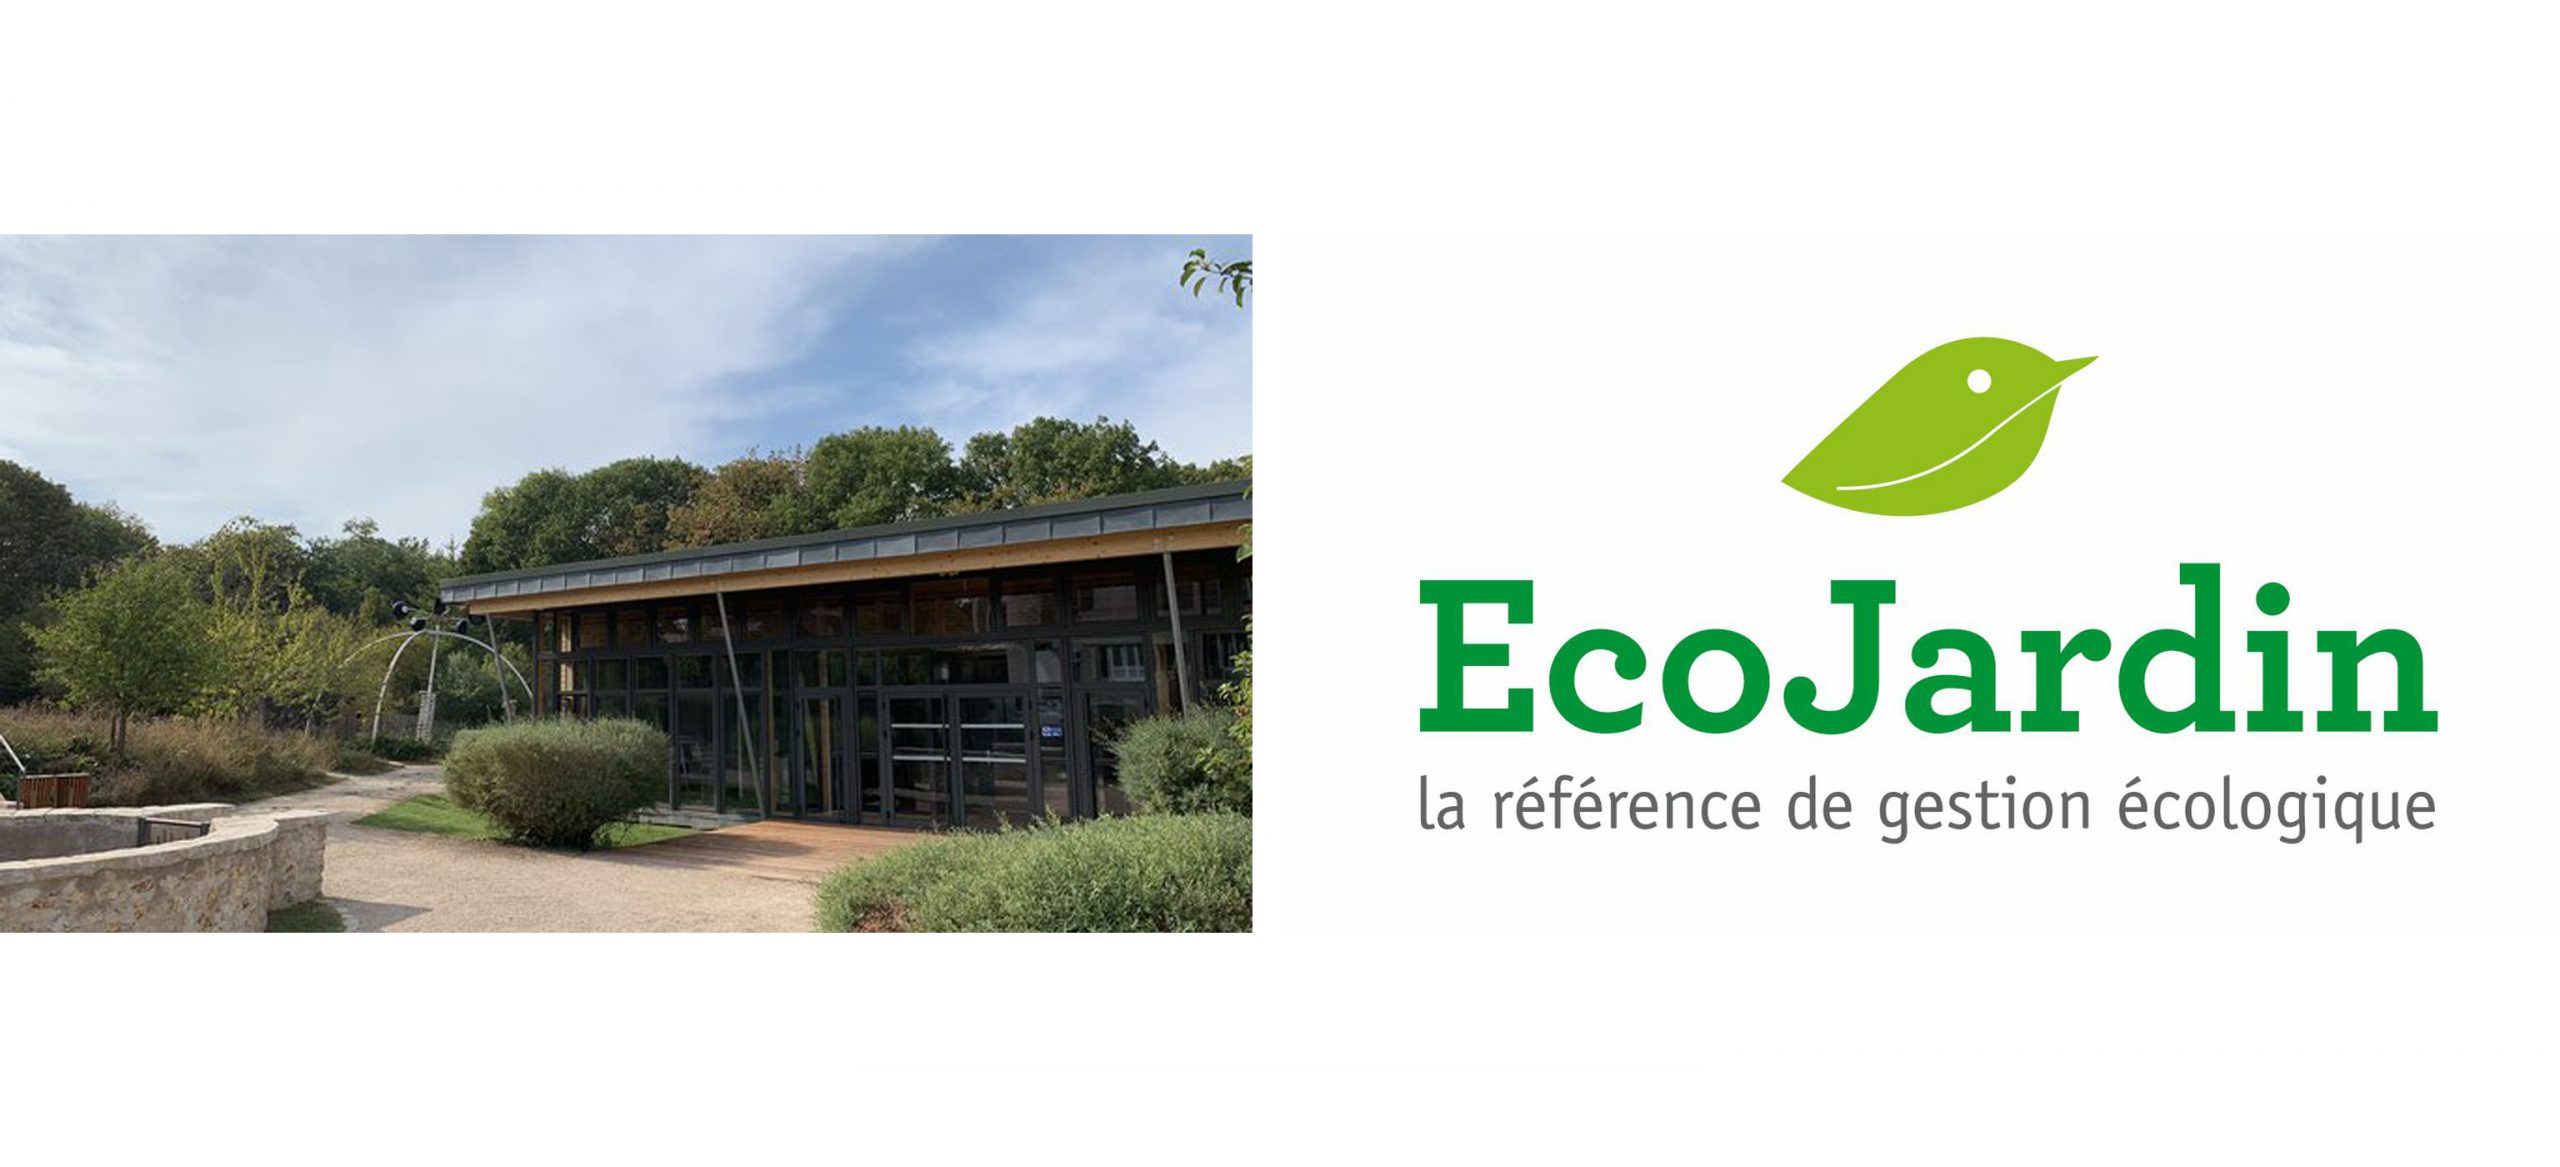 La Maison de l’Agglomération obtient le label EcoJardin 2020  !